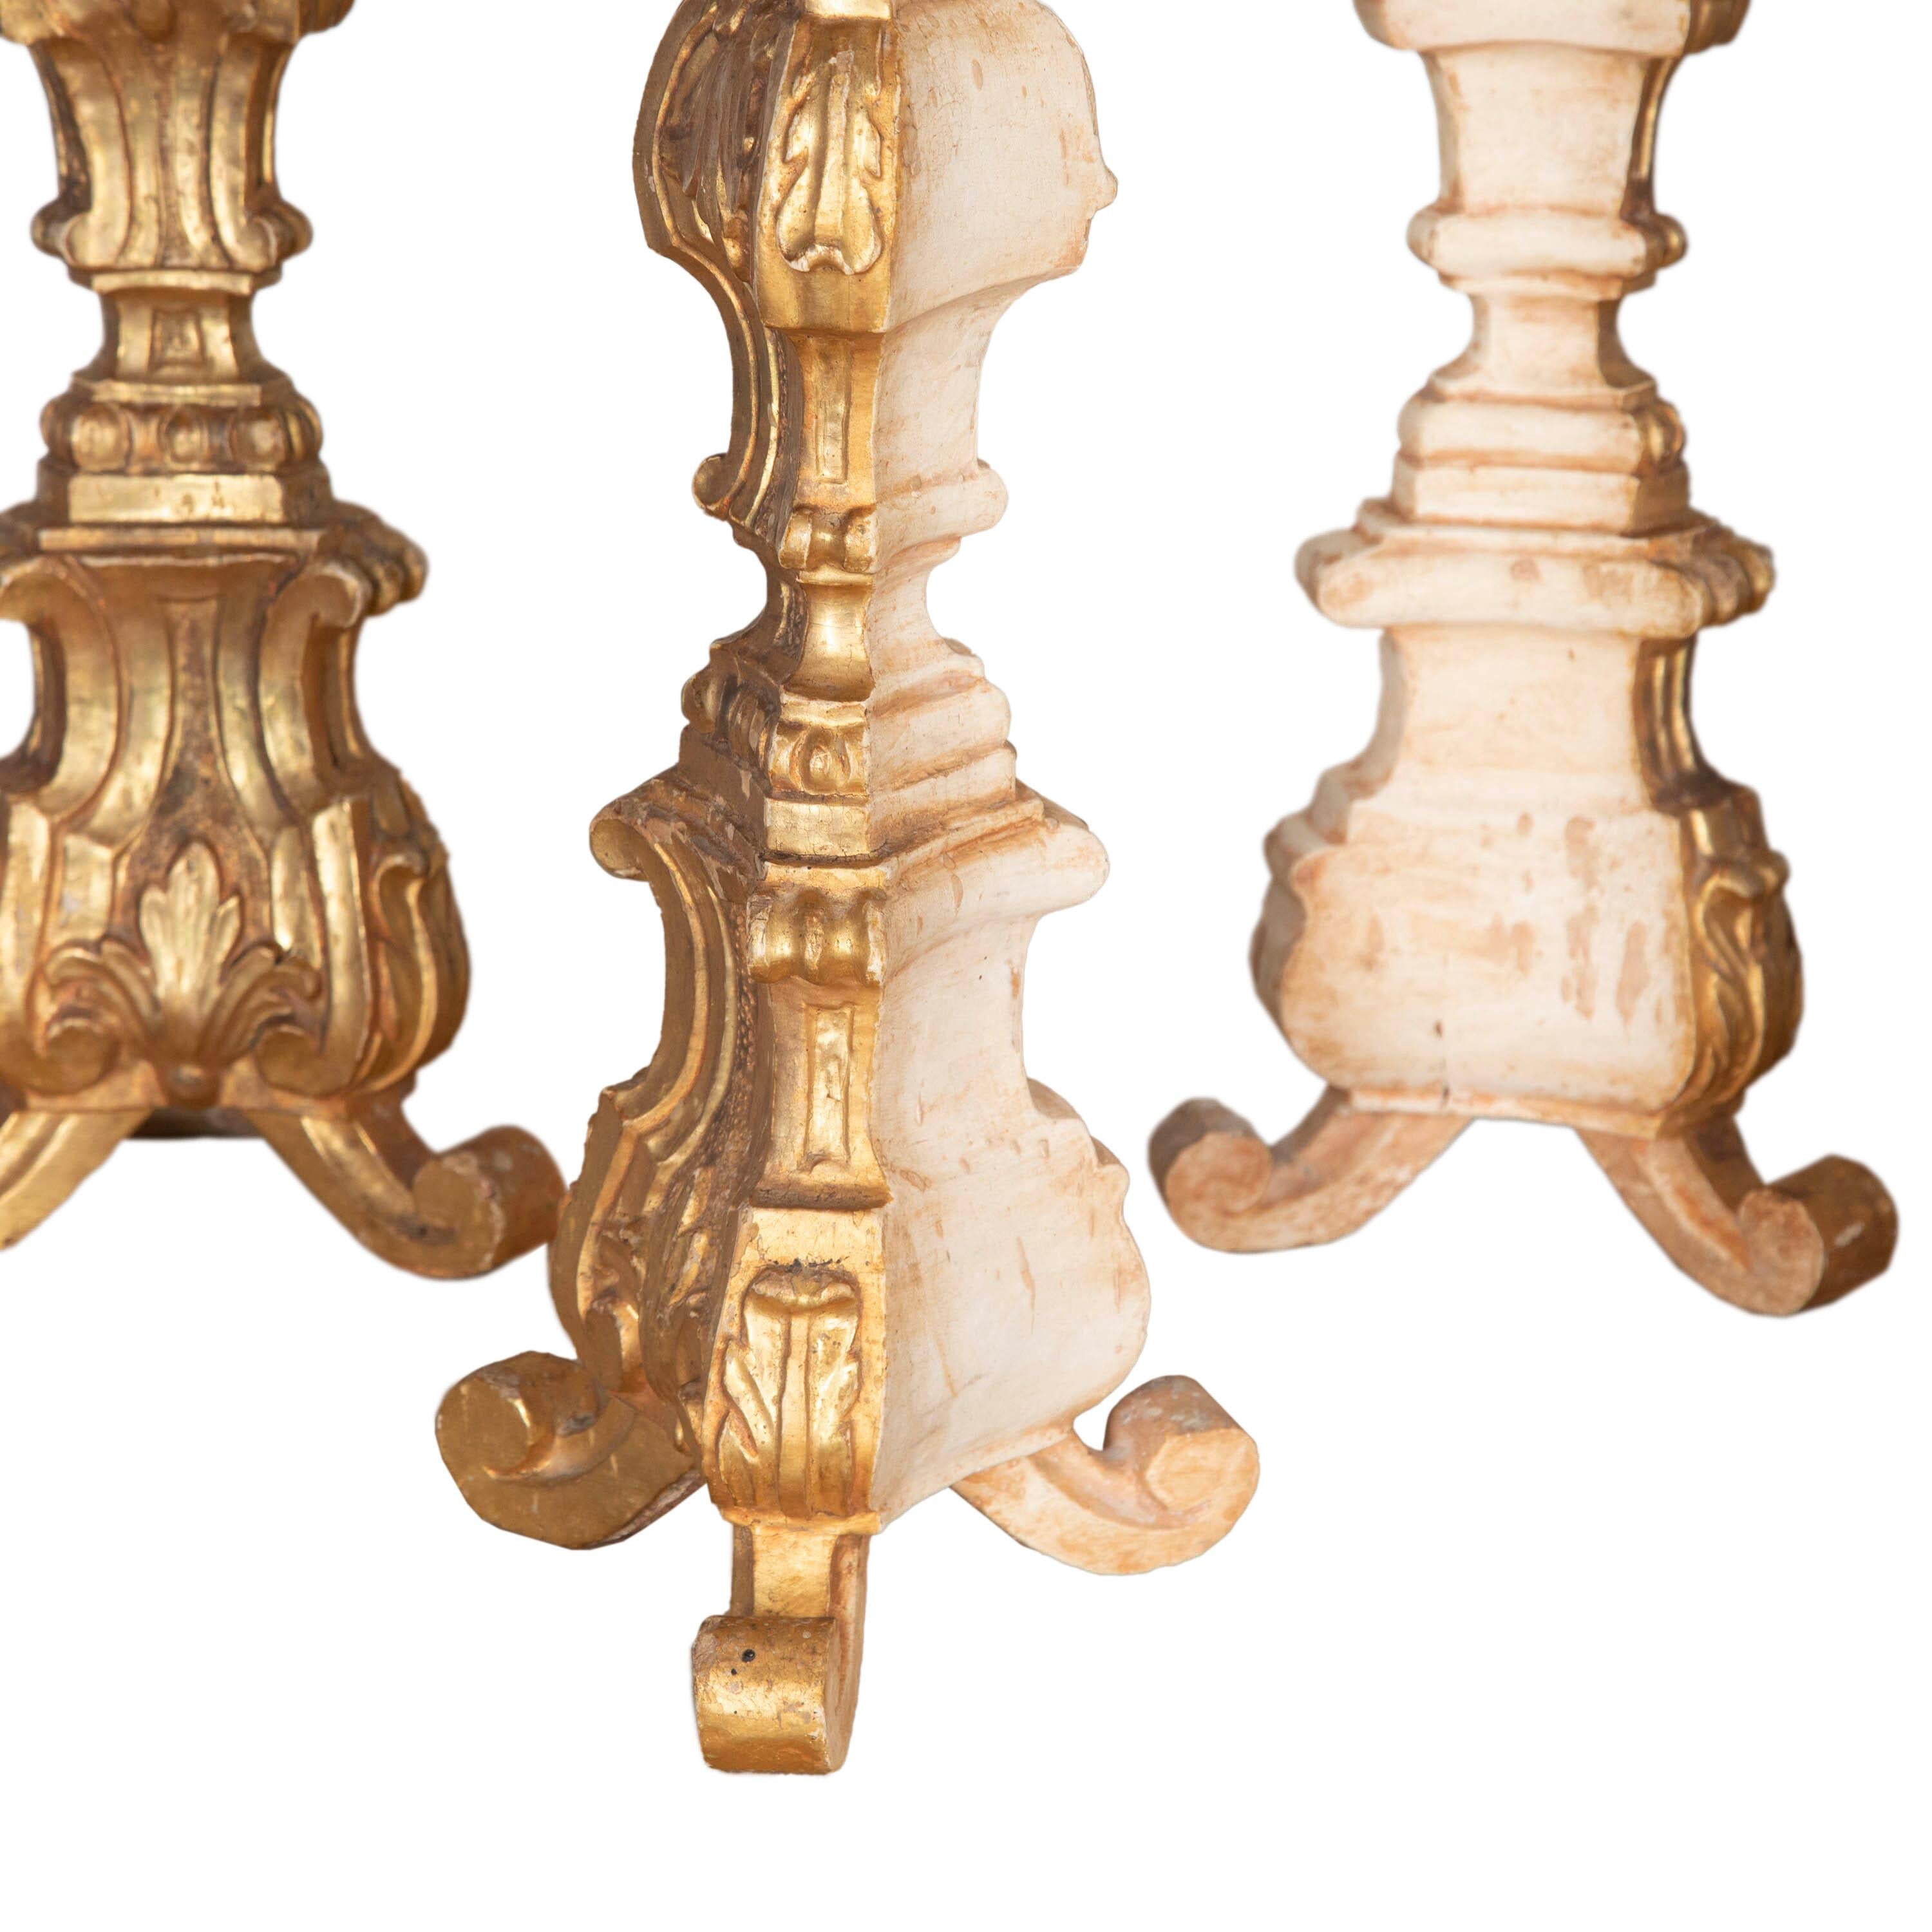 Sammlung von sechs Kerzenhaltern des 19. Jahrhunderts. 
In geschnitztem Holz mit dekorativen Details und Vergoldung im ganzen.